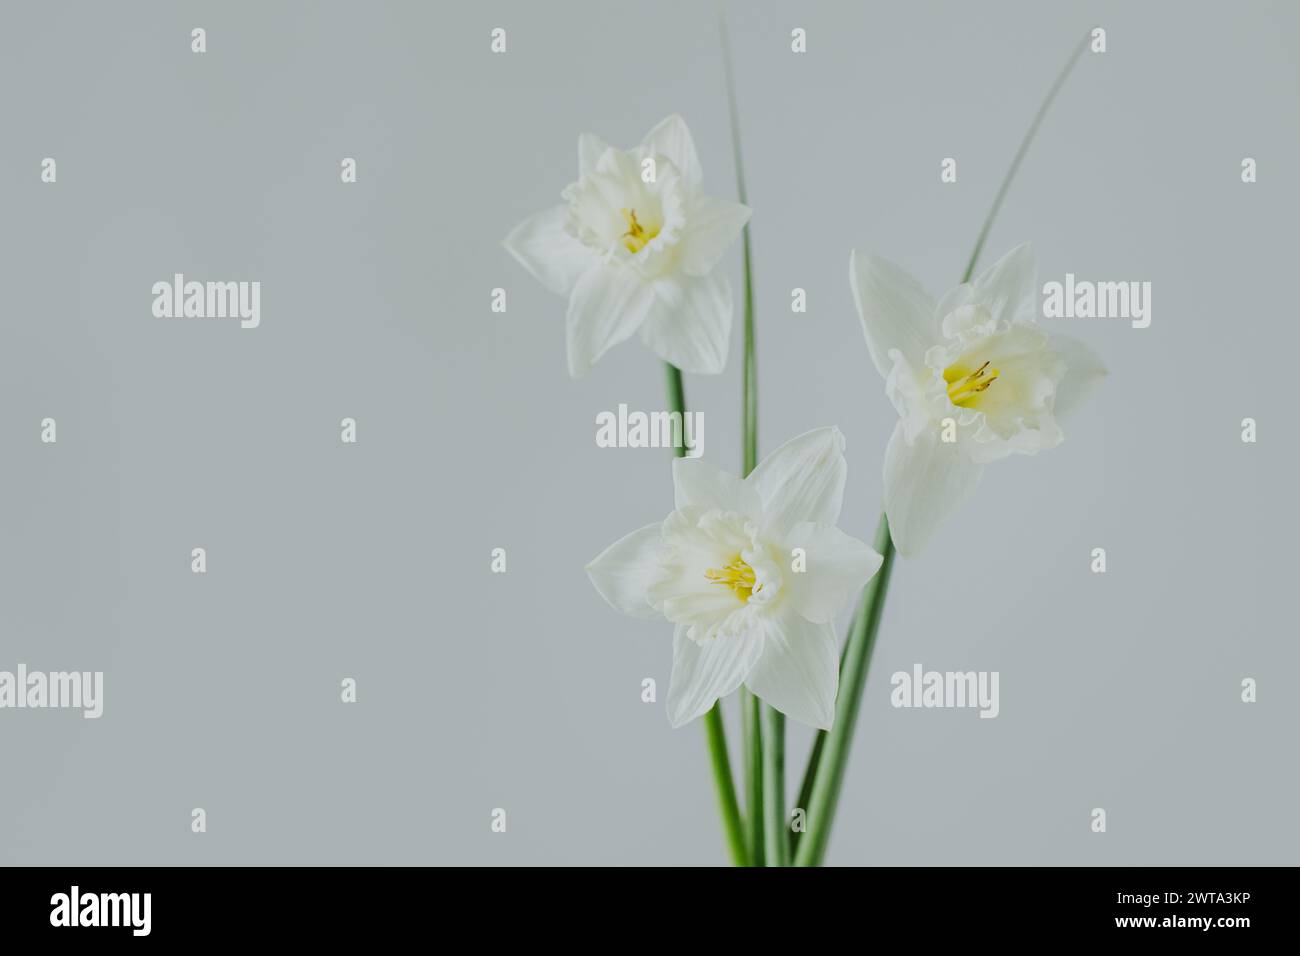 Belles fleurs de jonquille blanche (narcisse) sur un fond gris clair. Placer pour le texte. Banque D'Images